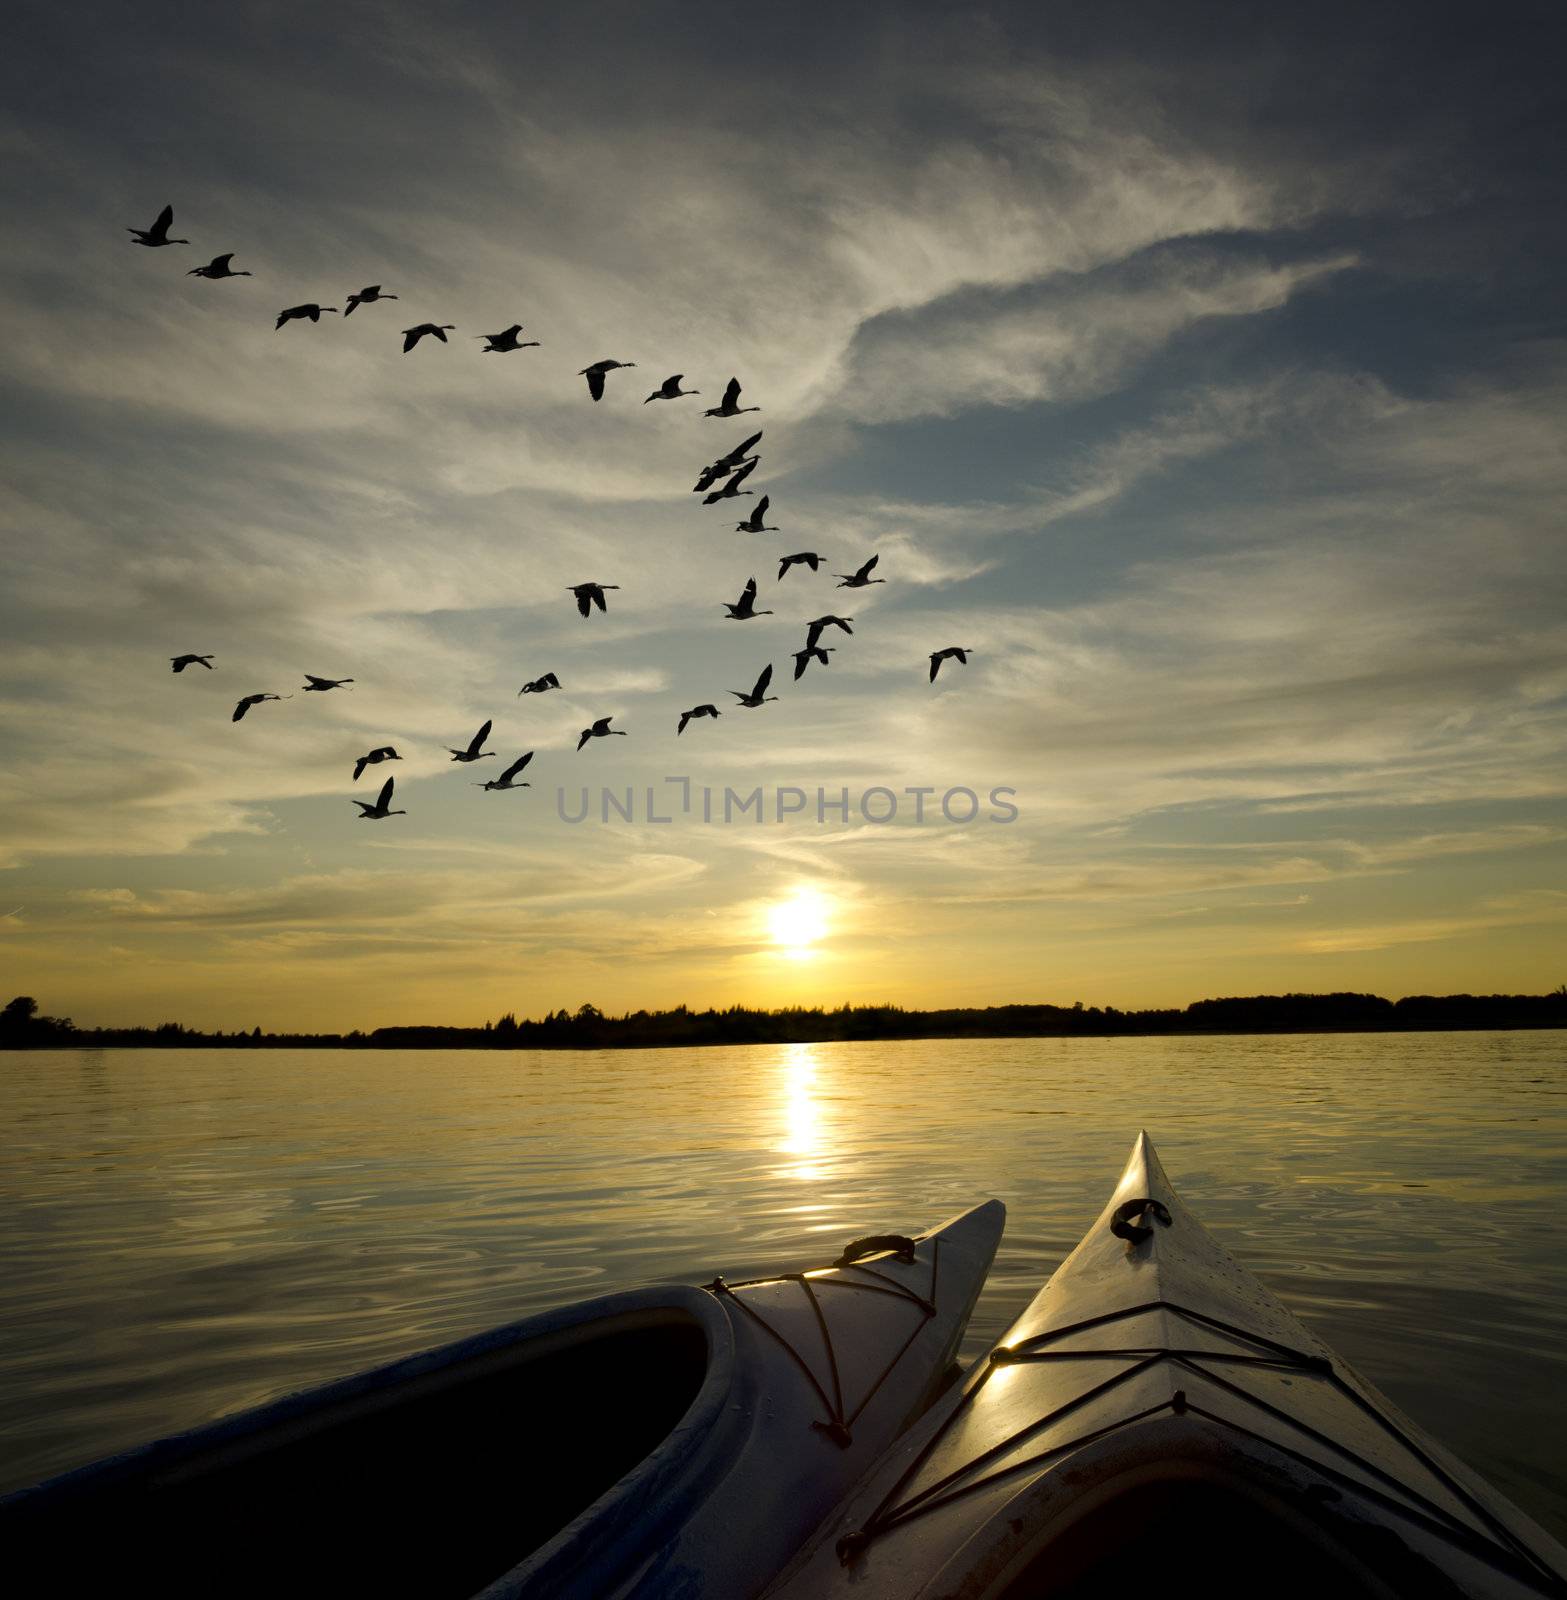 Kayaks on Lake Ontario at sunset with geese loking to landing on the water